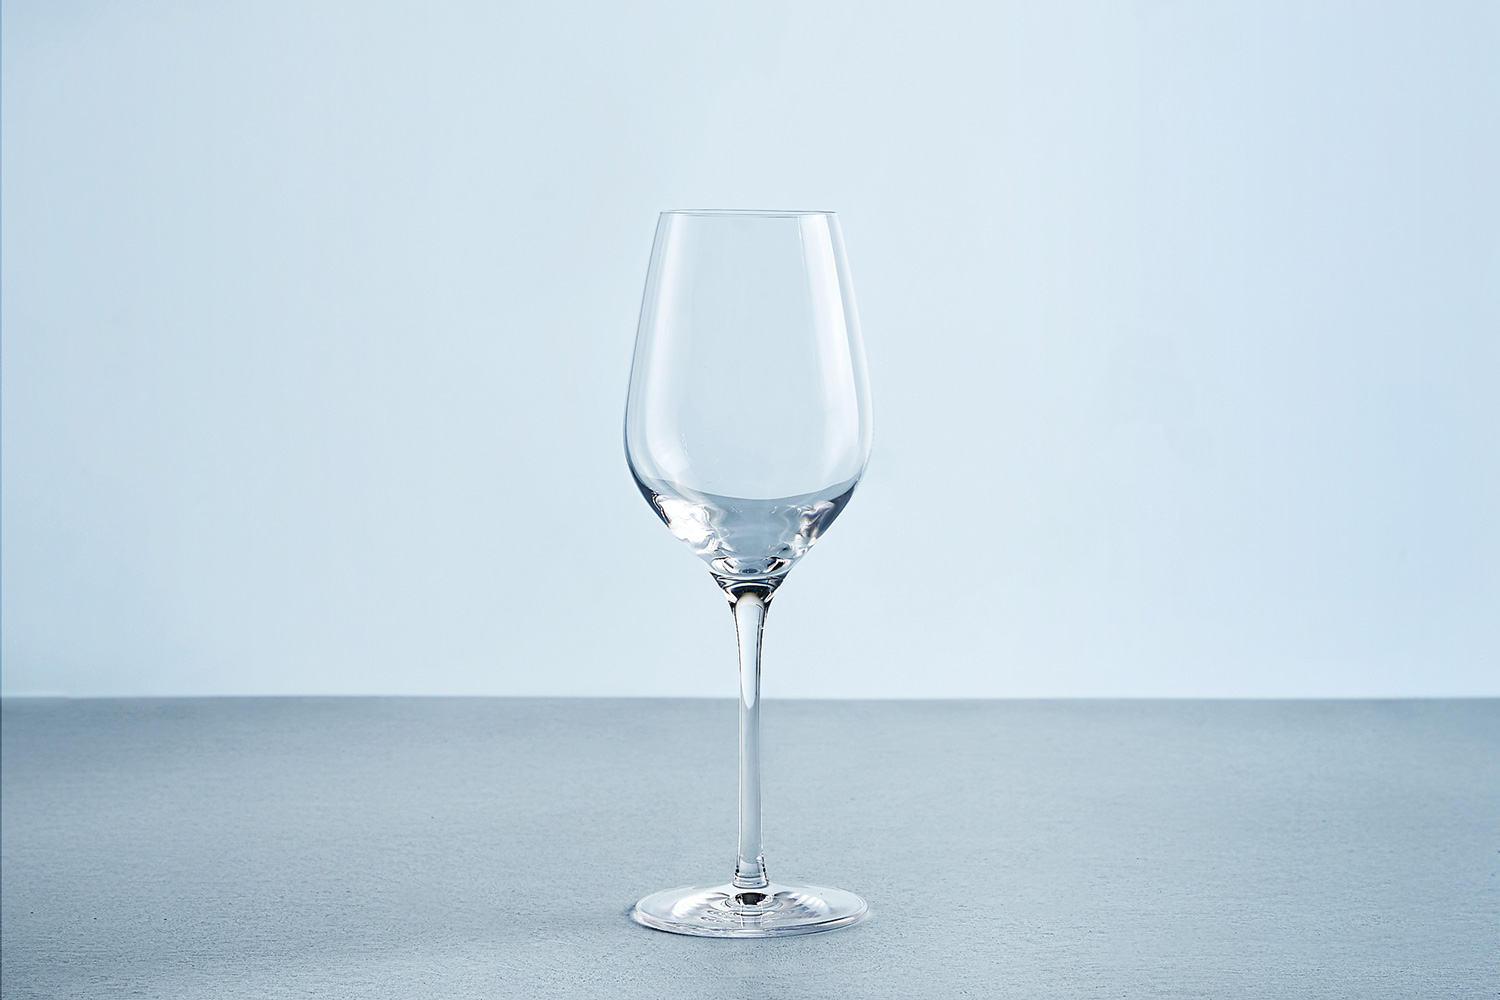 Набор бокалов для белого вина Avila